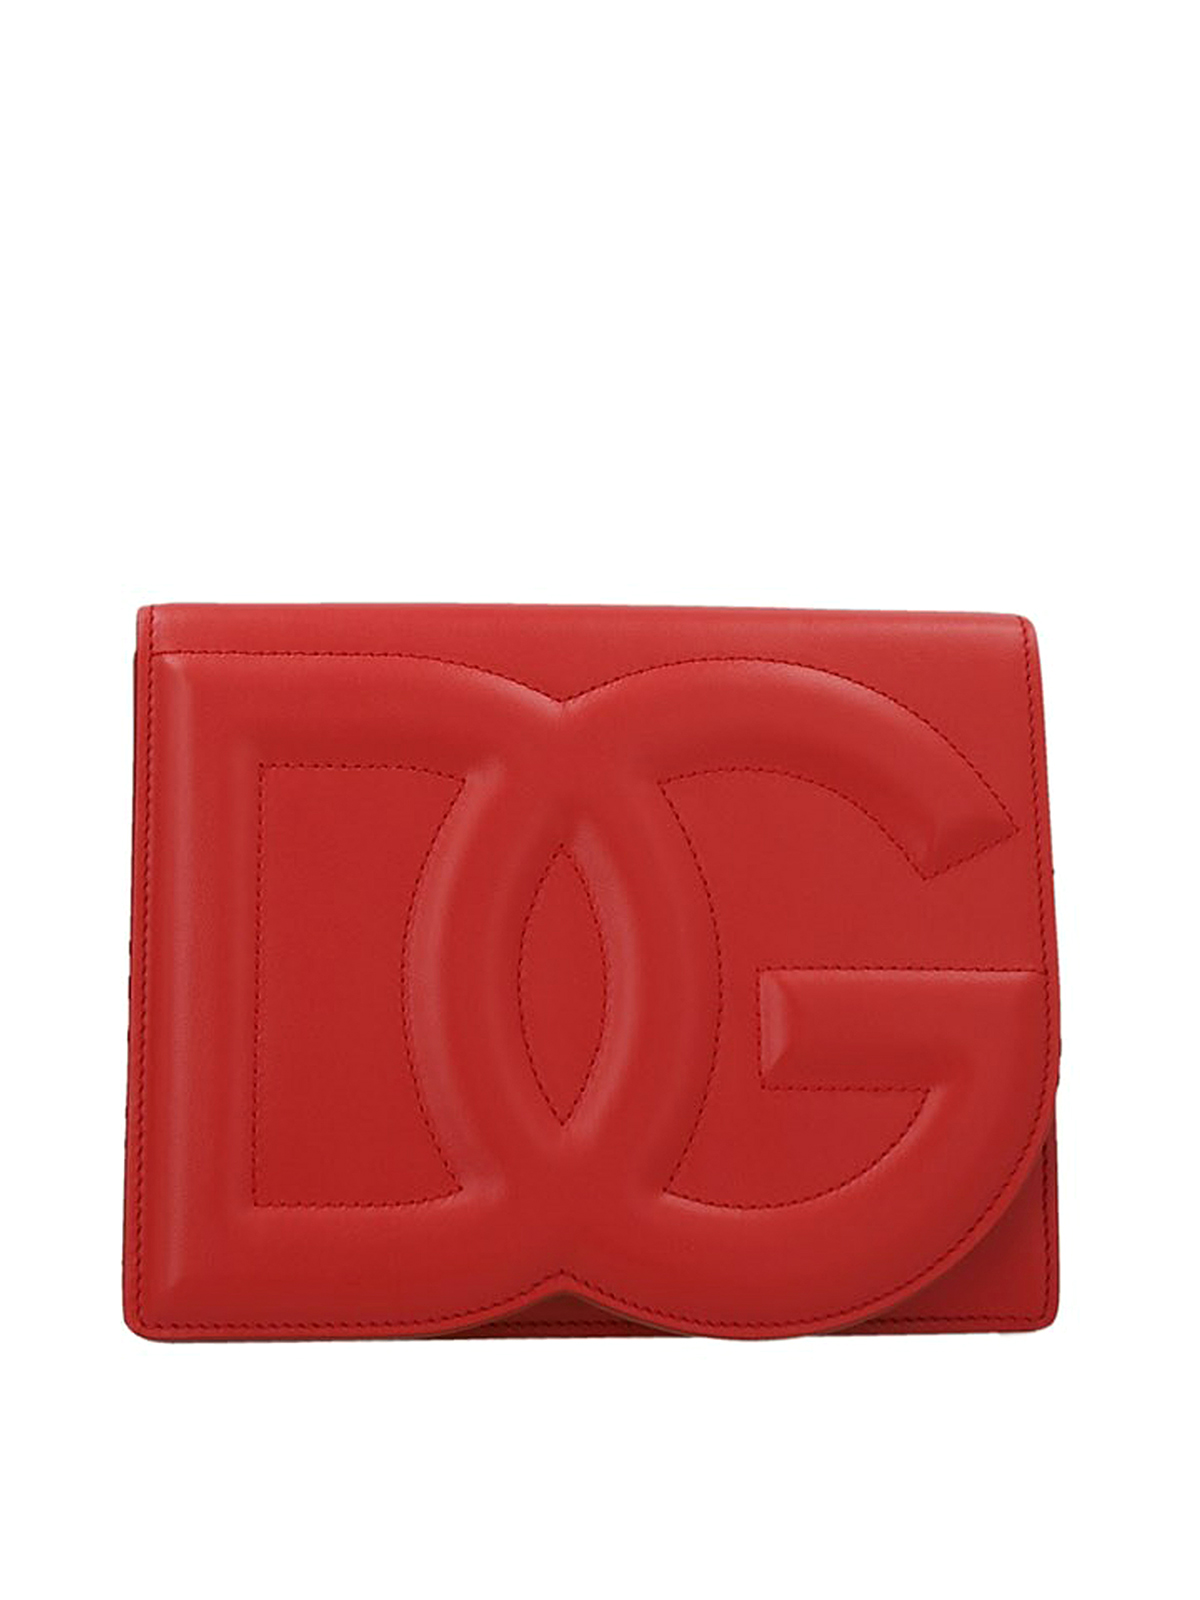 Dolce & Gabbana Leather Bag In Rojo